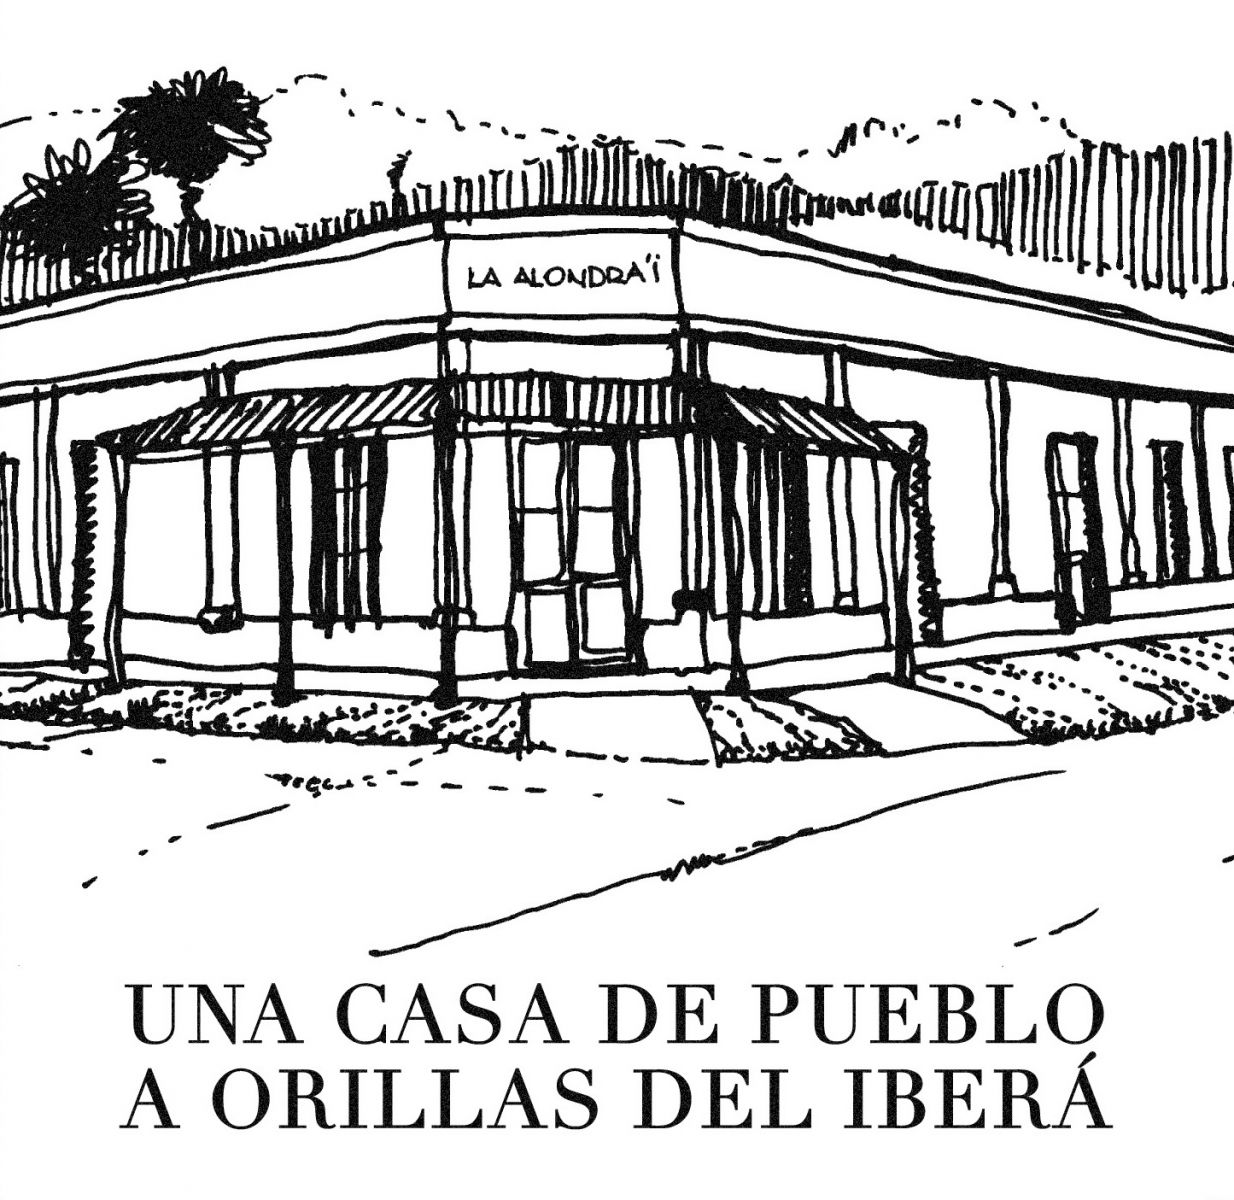 La Alondra’i, Casa de Pueblo